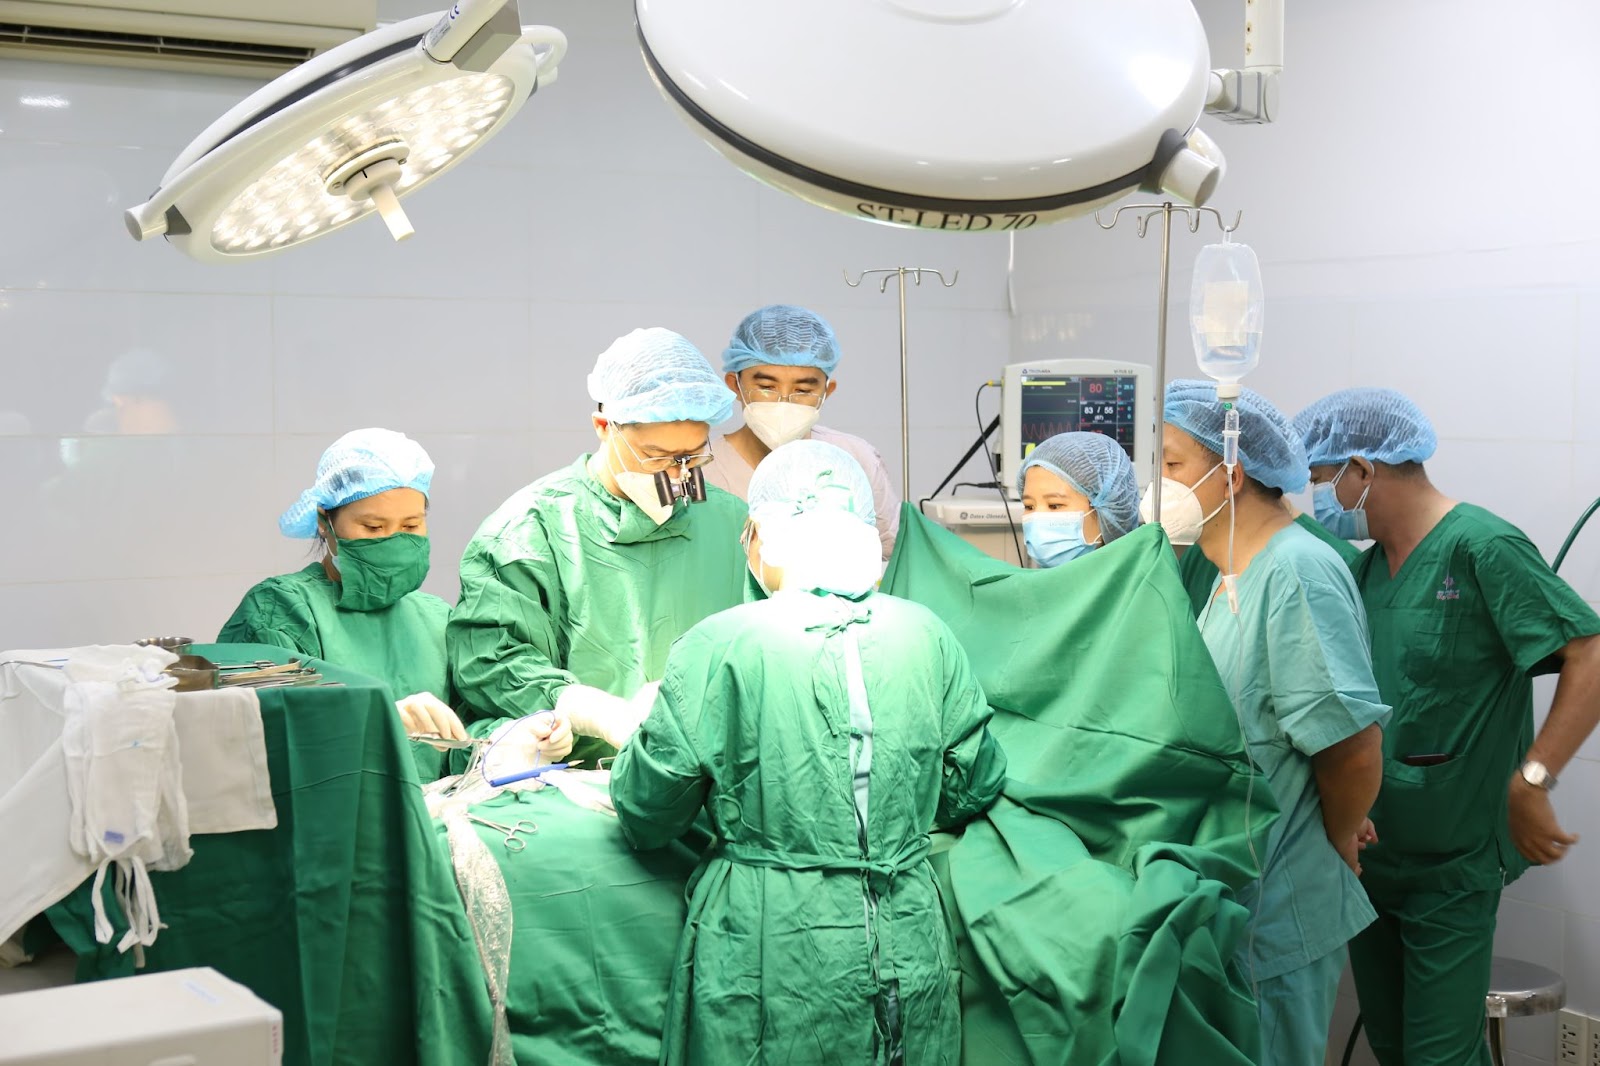 Minh chứng sáng giá nhất cho chất lượng dịch vụ tại Bệnh viện Thẩm mỹ Ngọc Phú đó chính là chất lượng dịch vụ tốt, đội ngũ bác sĩ chất lượng.